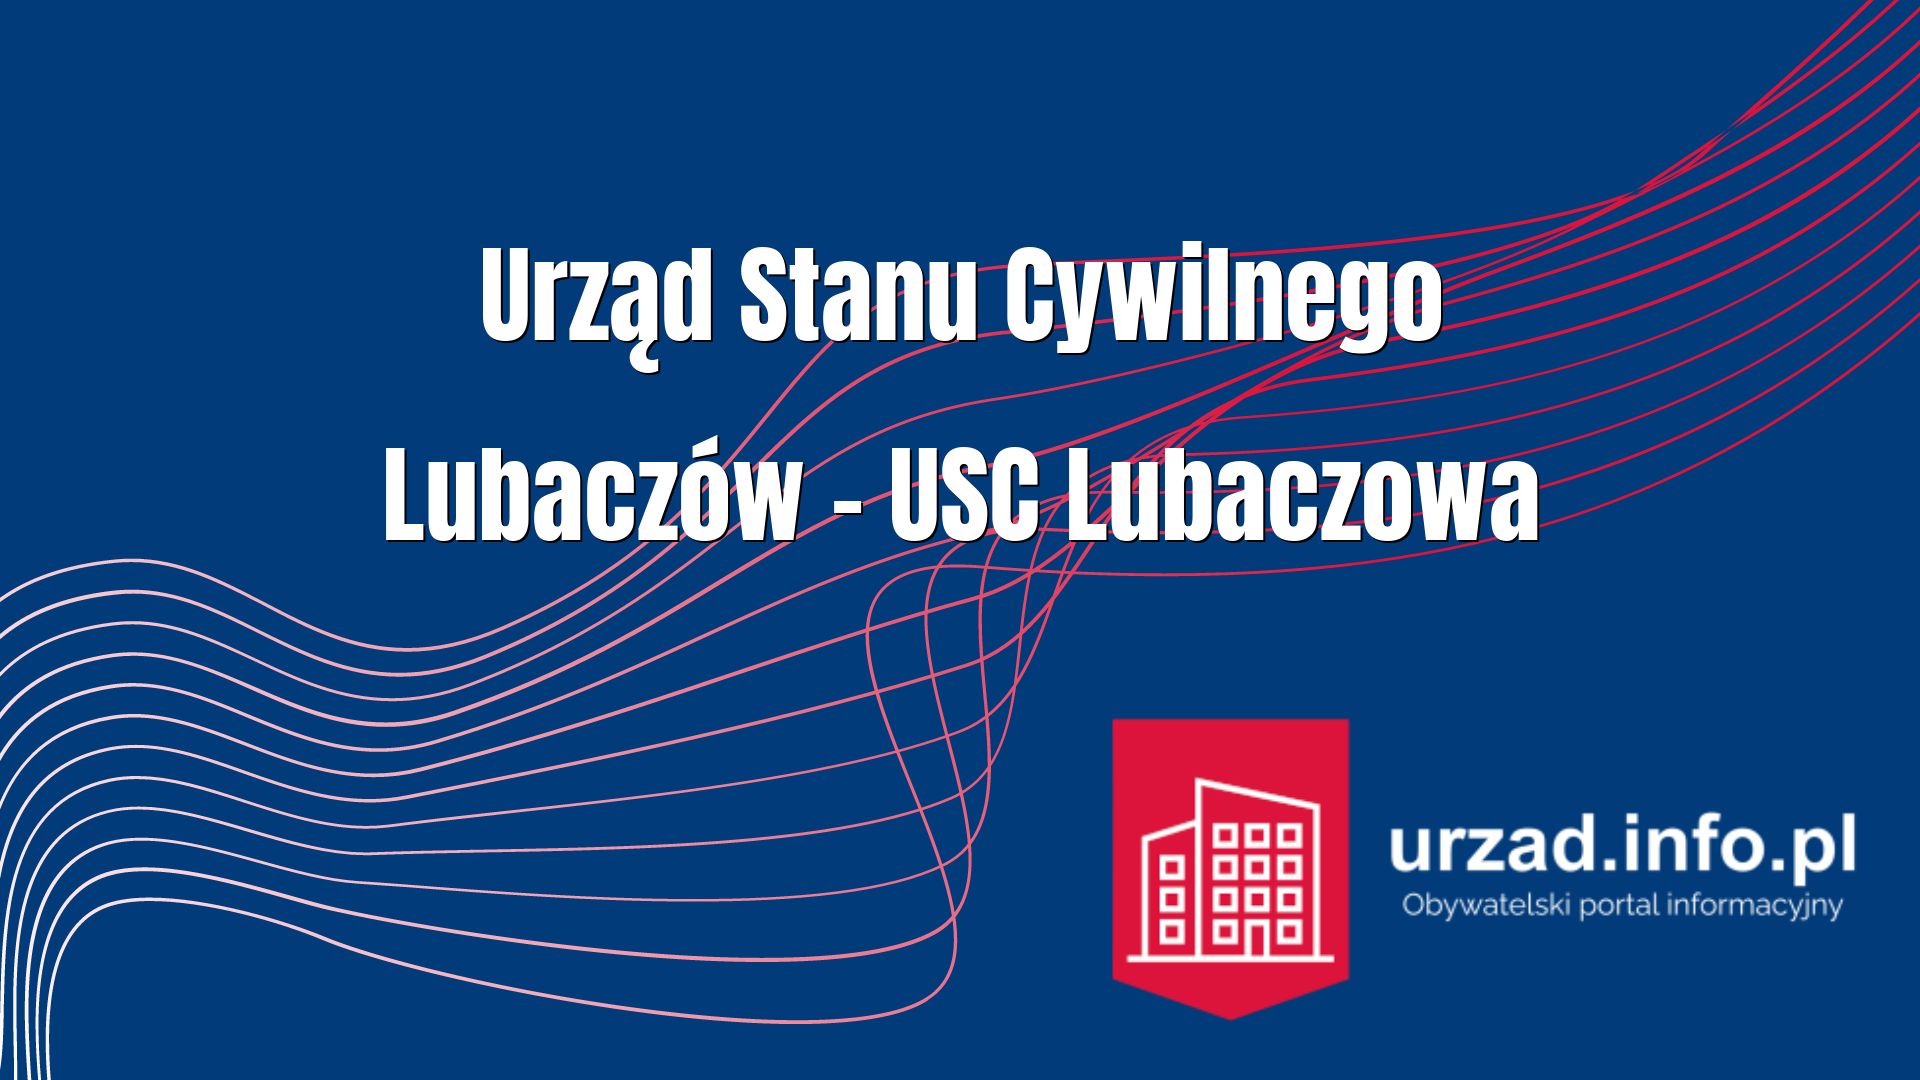 Urząd Stanu Cywilnego Lubaczów – USC Lubaczowa